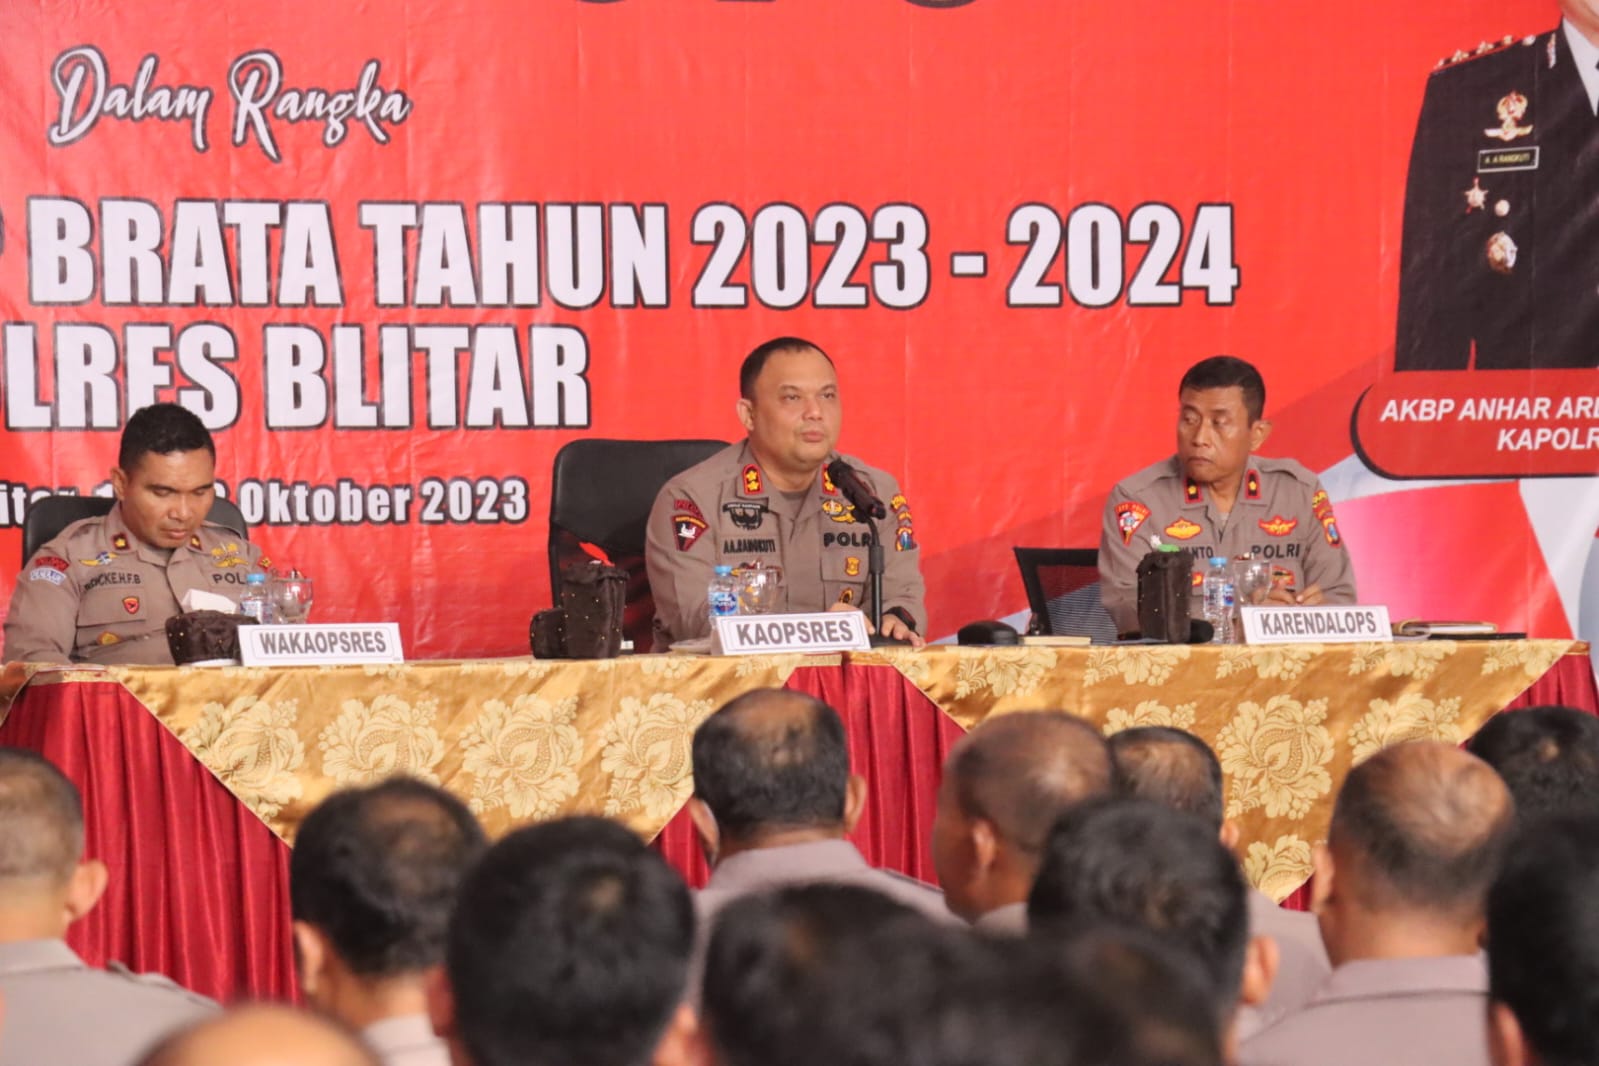 Jelang Pemilu 2024, Polres Blitar Matangkan Lat Pra Ops Mantap Brata 2023-2024